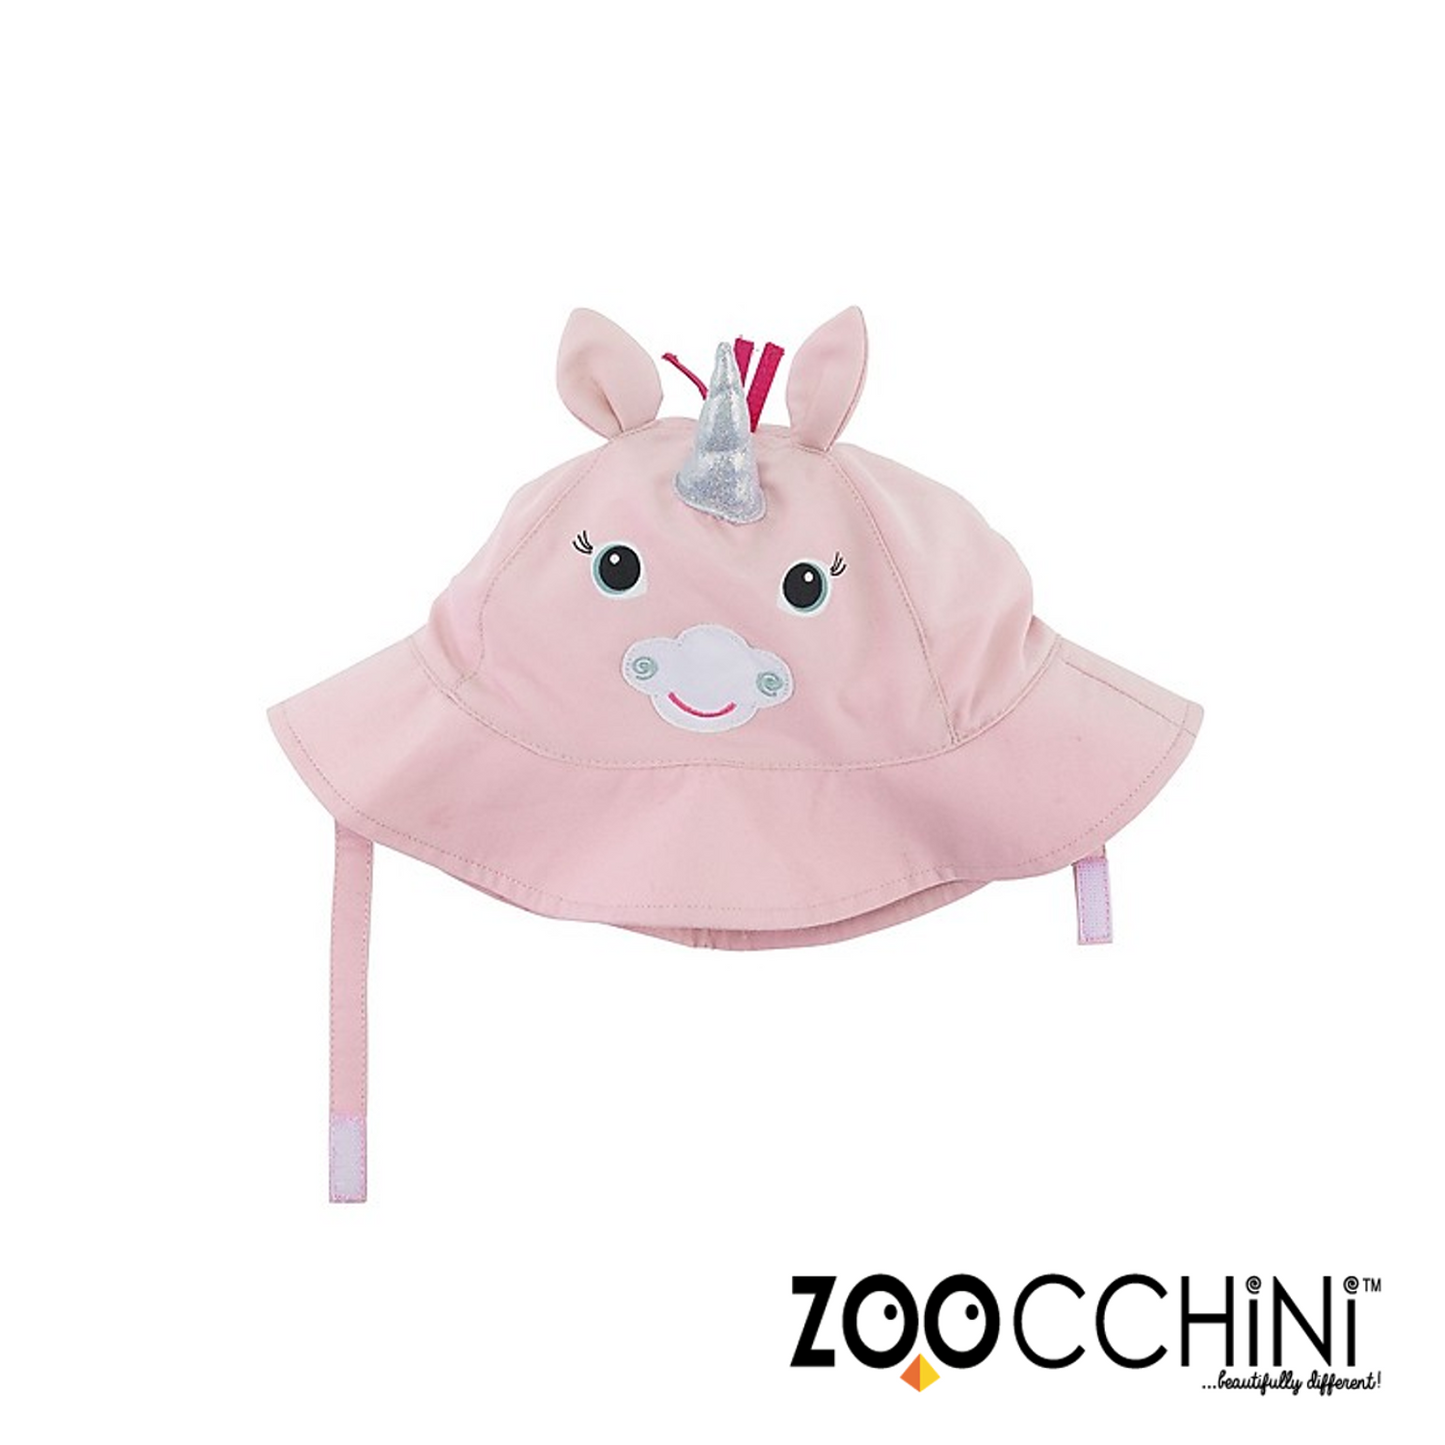 Zoocchini - Unicorn Baby UPF 50 Summer Cap